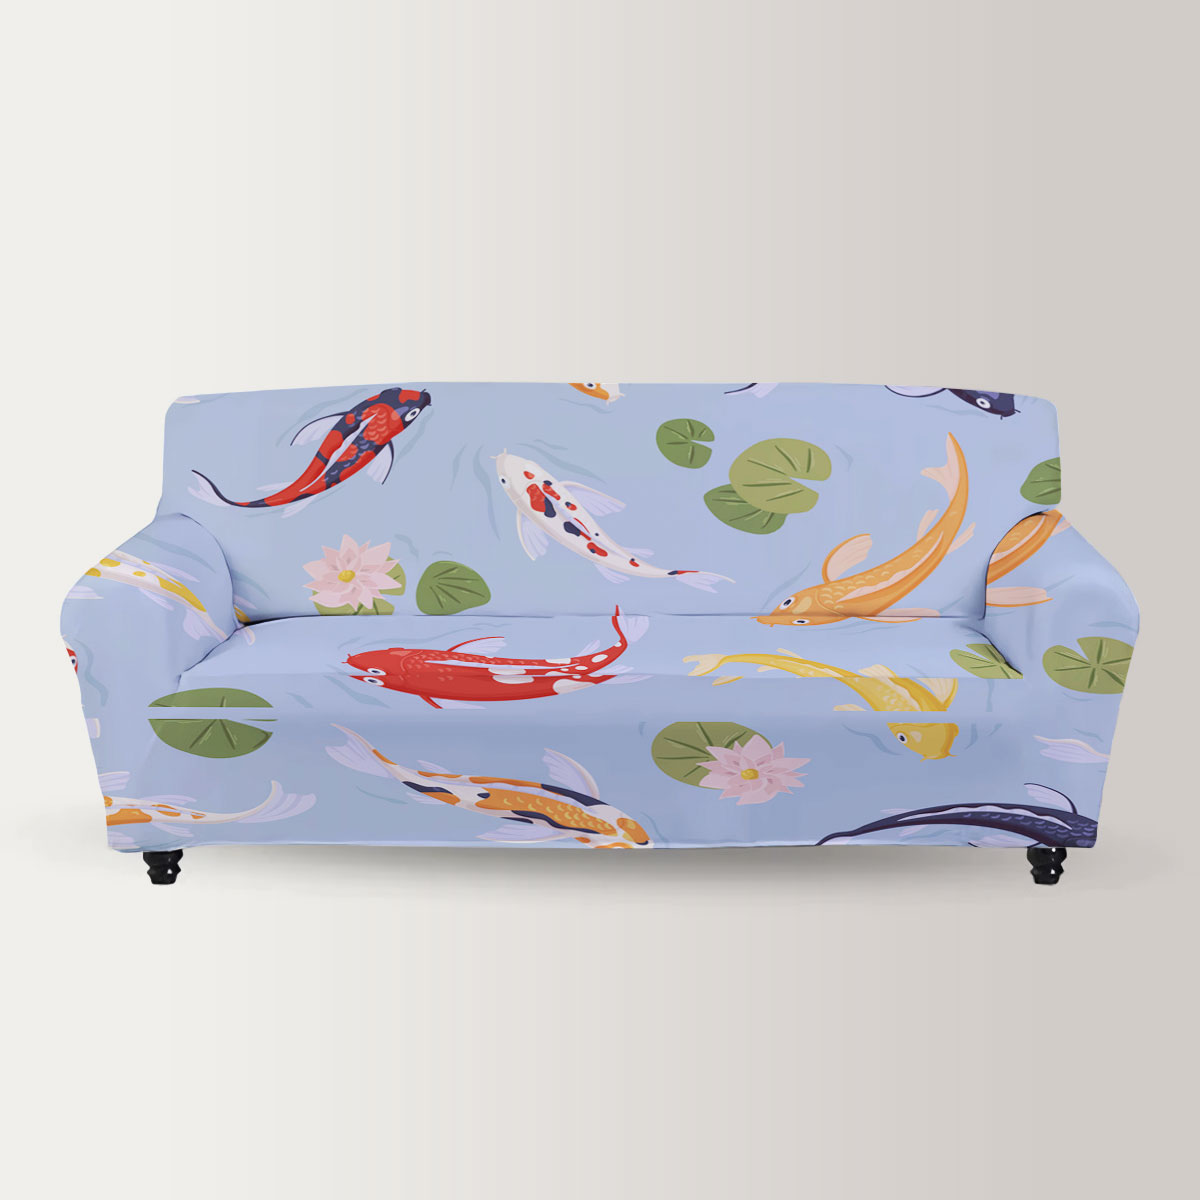 Colorful Koi Fish Sofa Cover